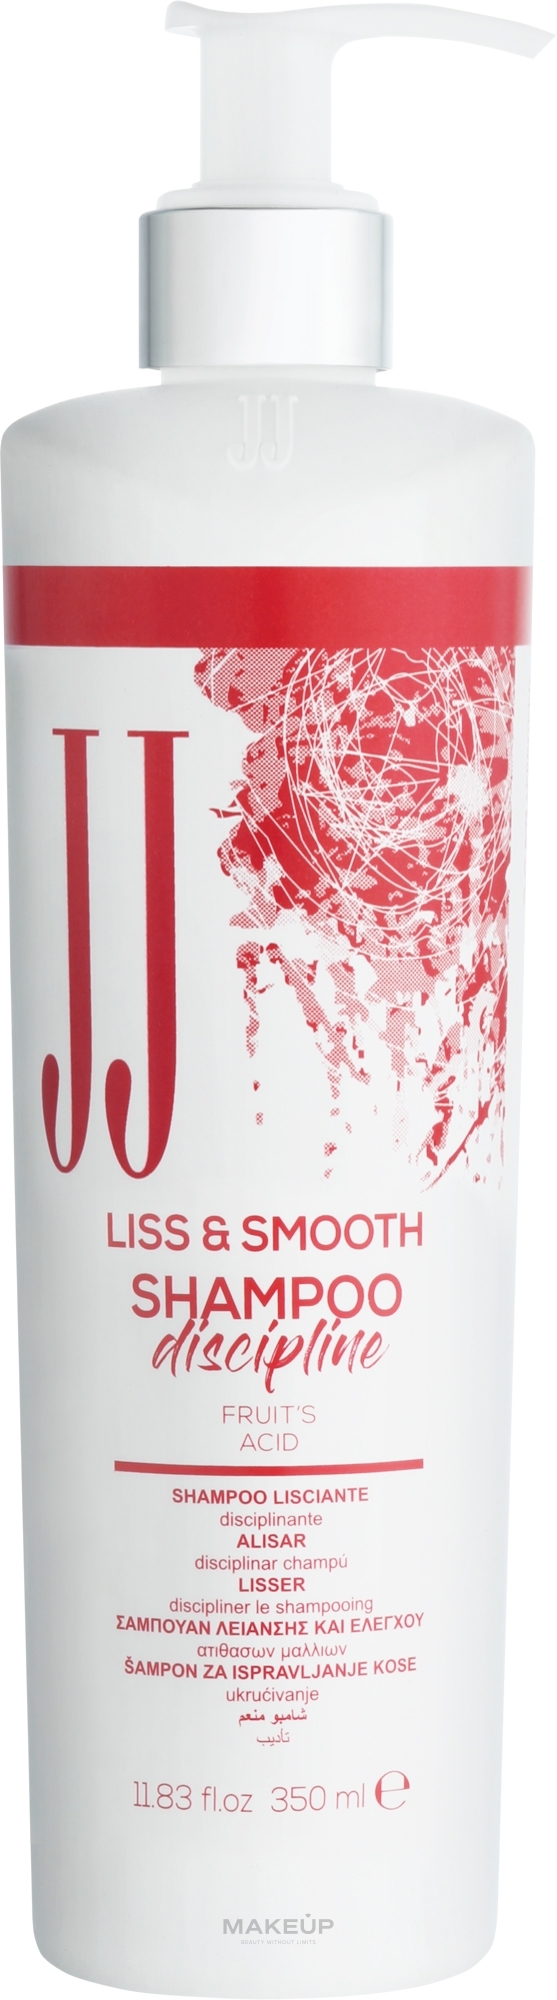 Шампунь для гладкості неслухняного волосся - JJ Liss & Smooth Shampoo Discipline — фото 350ml